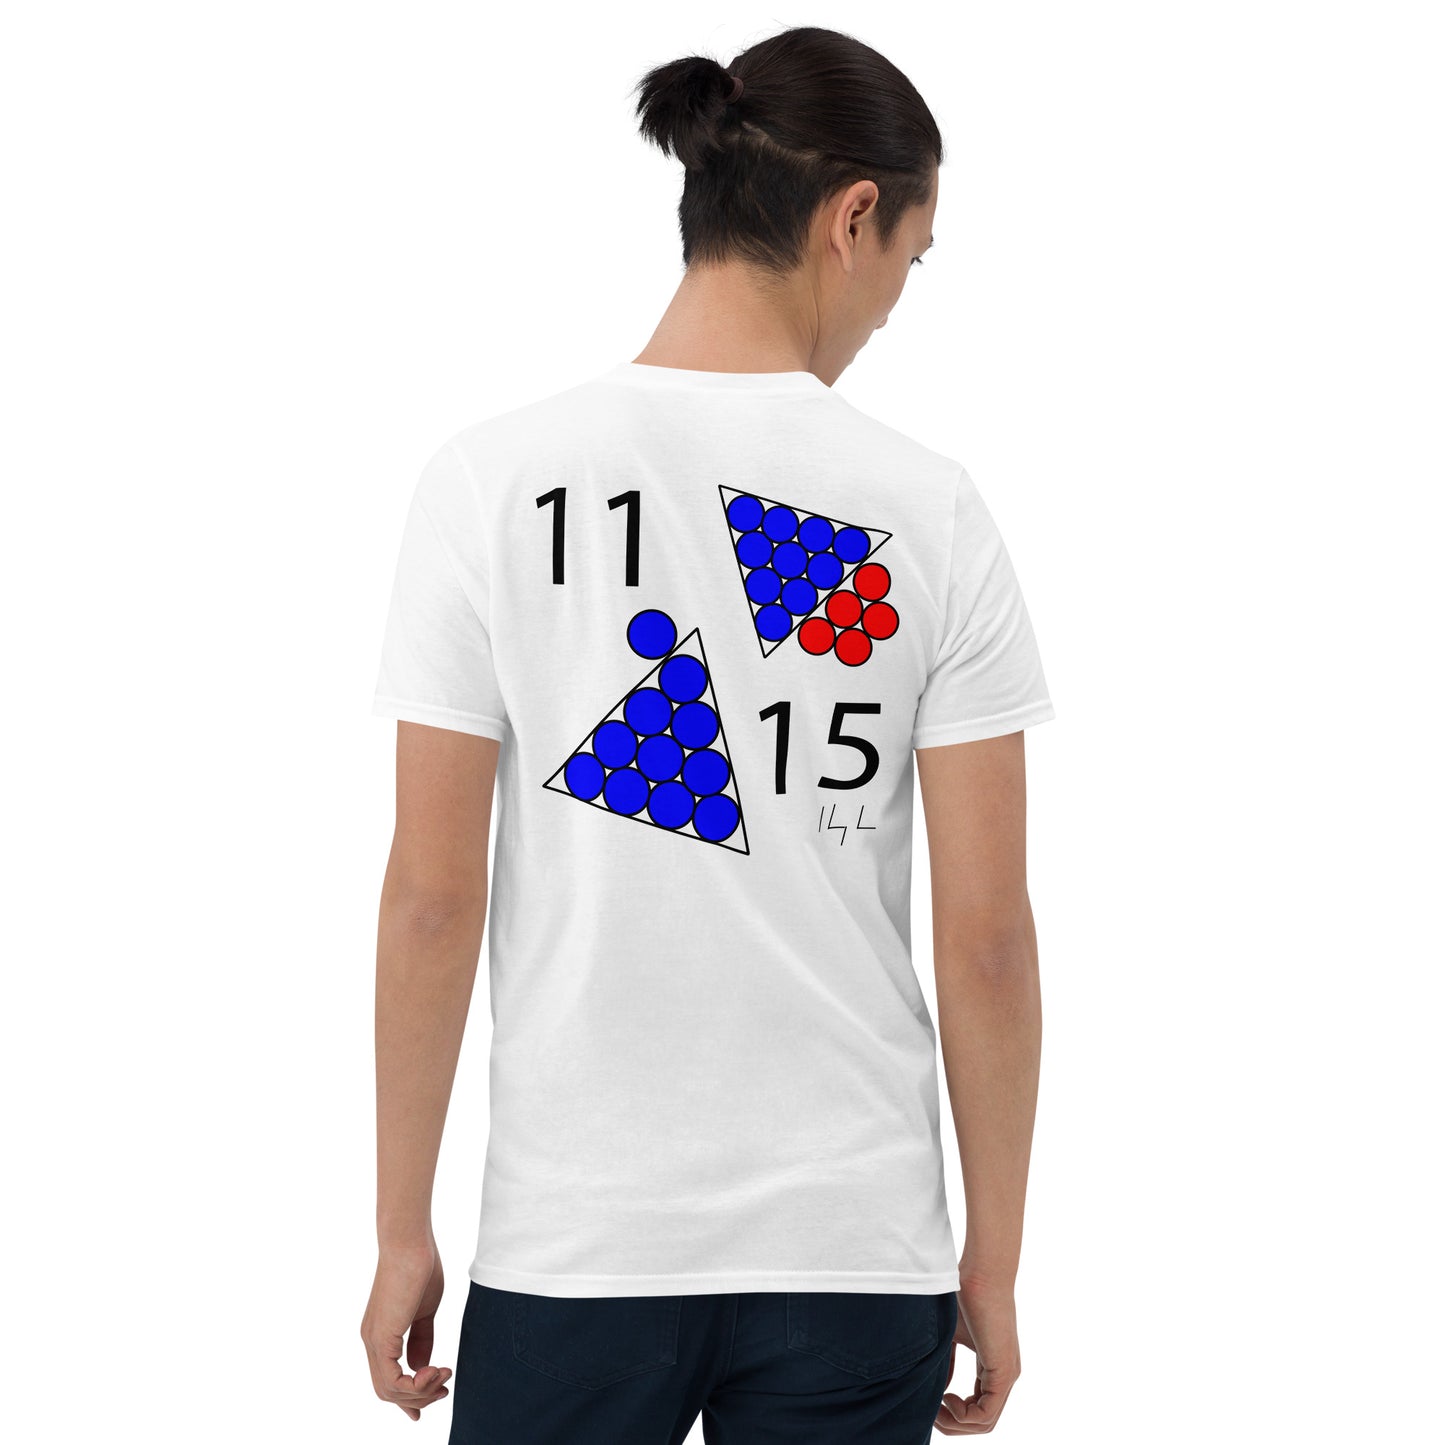 November 15th Blue T-Shirt at 11:15 1115